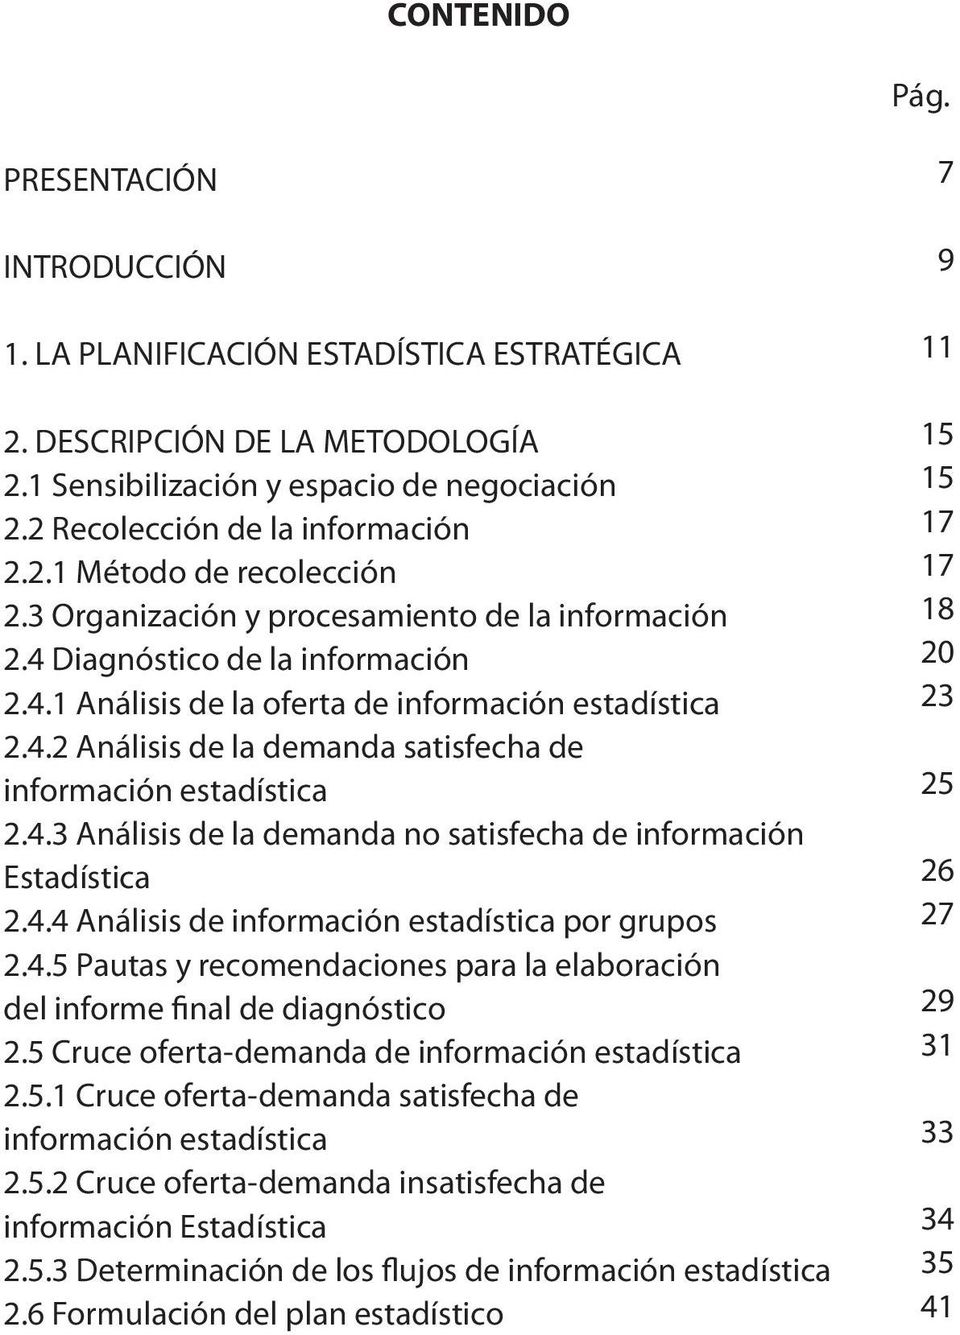 4.3 Análisis de la demanda no satisfecha de información Estadística 2.4.4 Análisis de información estadística por grupos 2.4.5 Pautas y recomendaciones para la elaboración del informe final de diagnóstico 2.